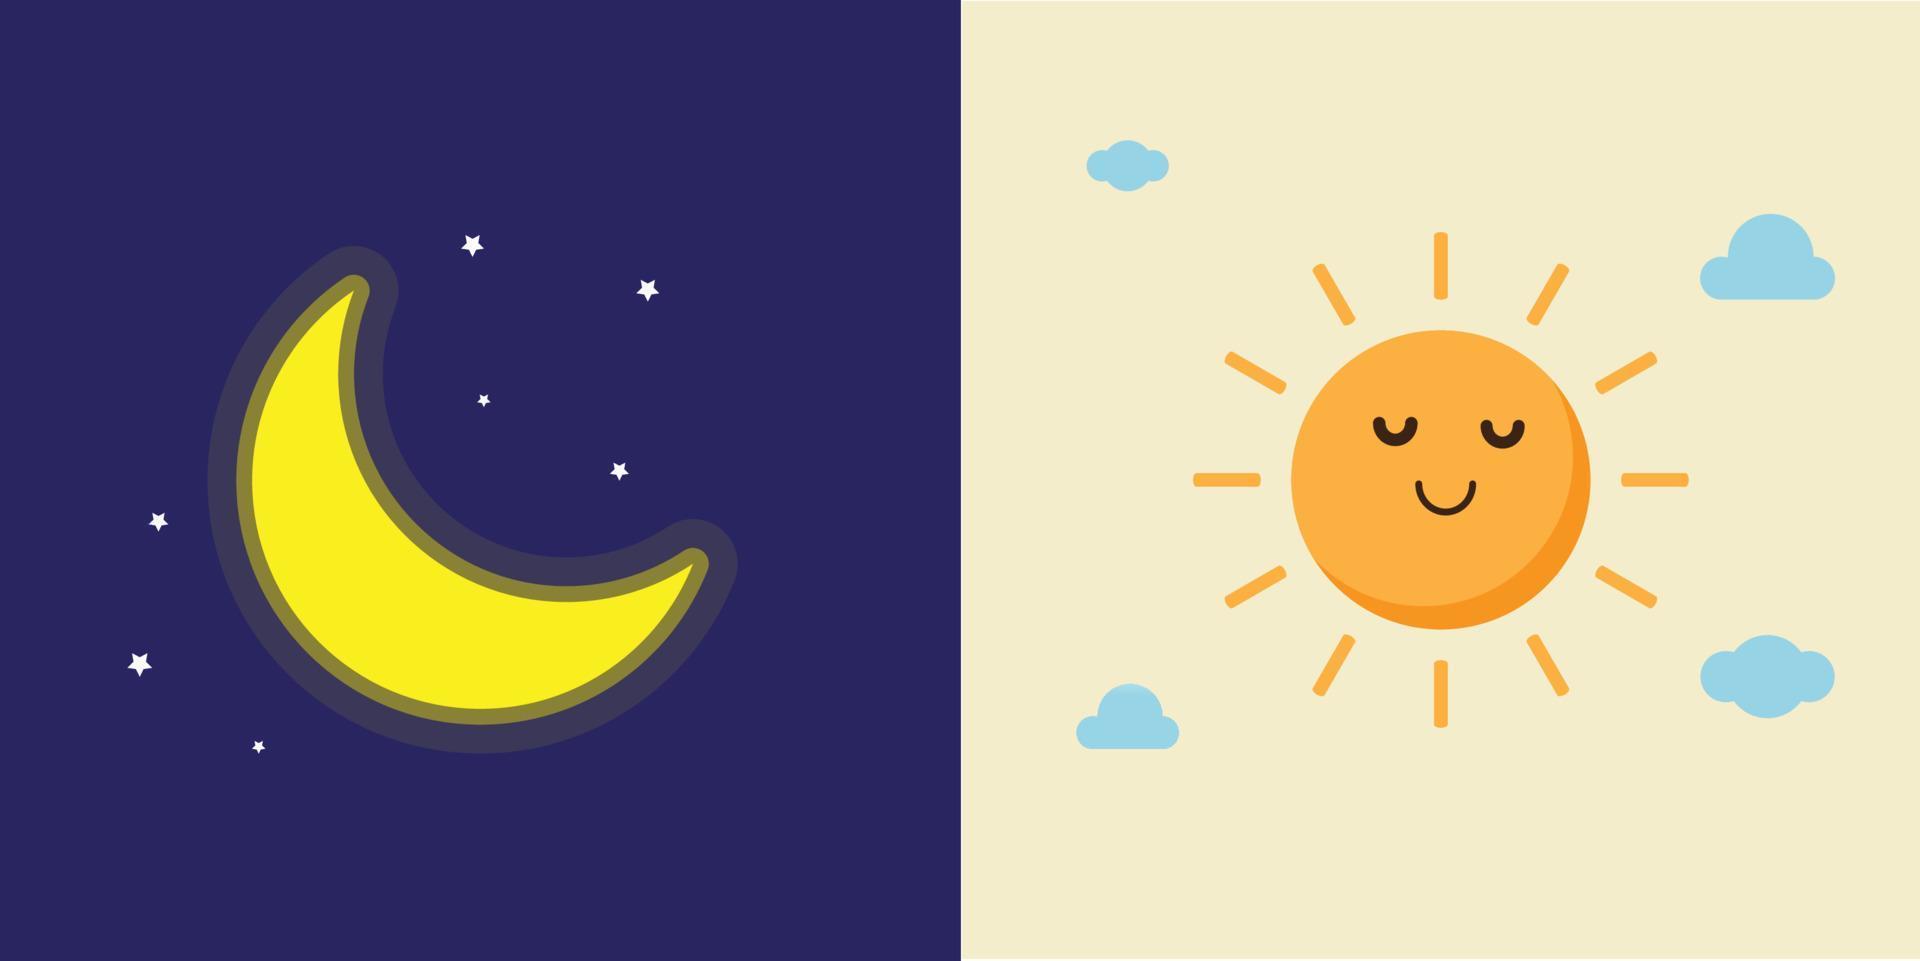 sol bonito simples sentir relaxar e conjunto de ícones planos coloridos da lua. ilustração vetorial de personagens de desenhos animados dia e noite. vetor